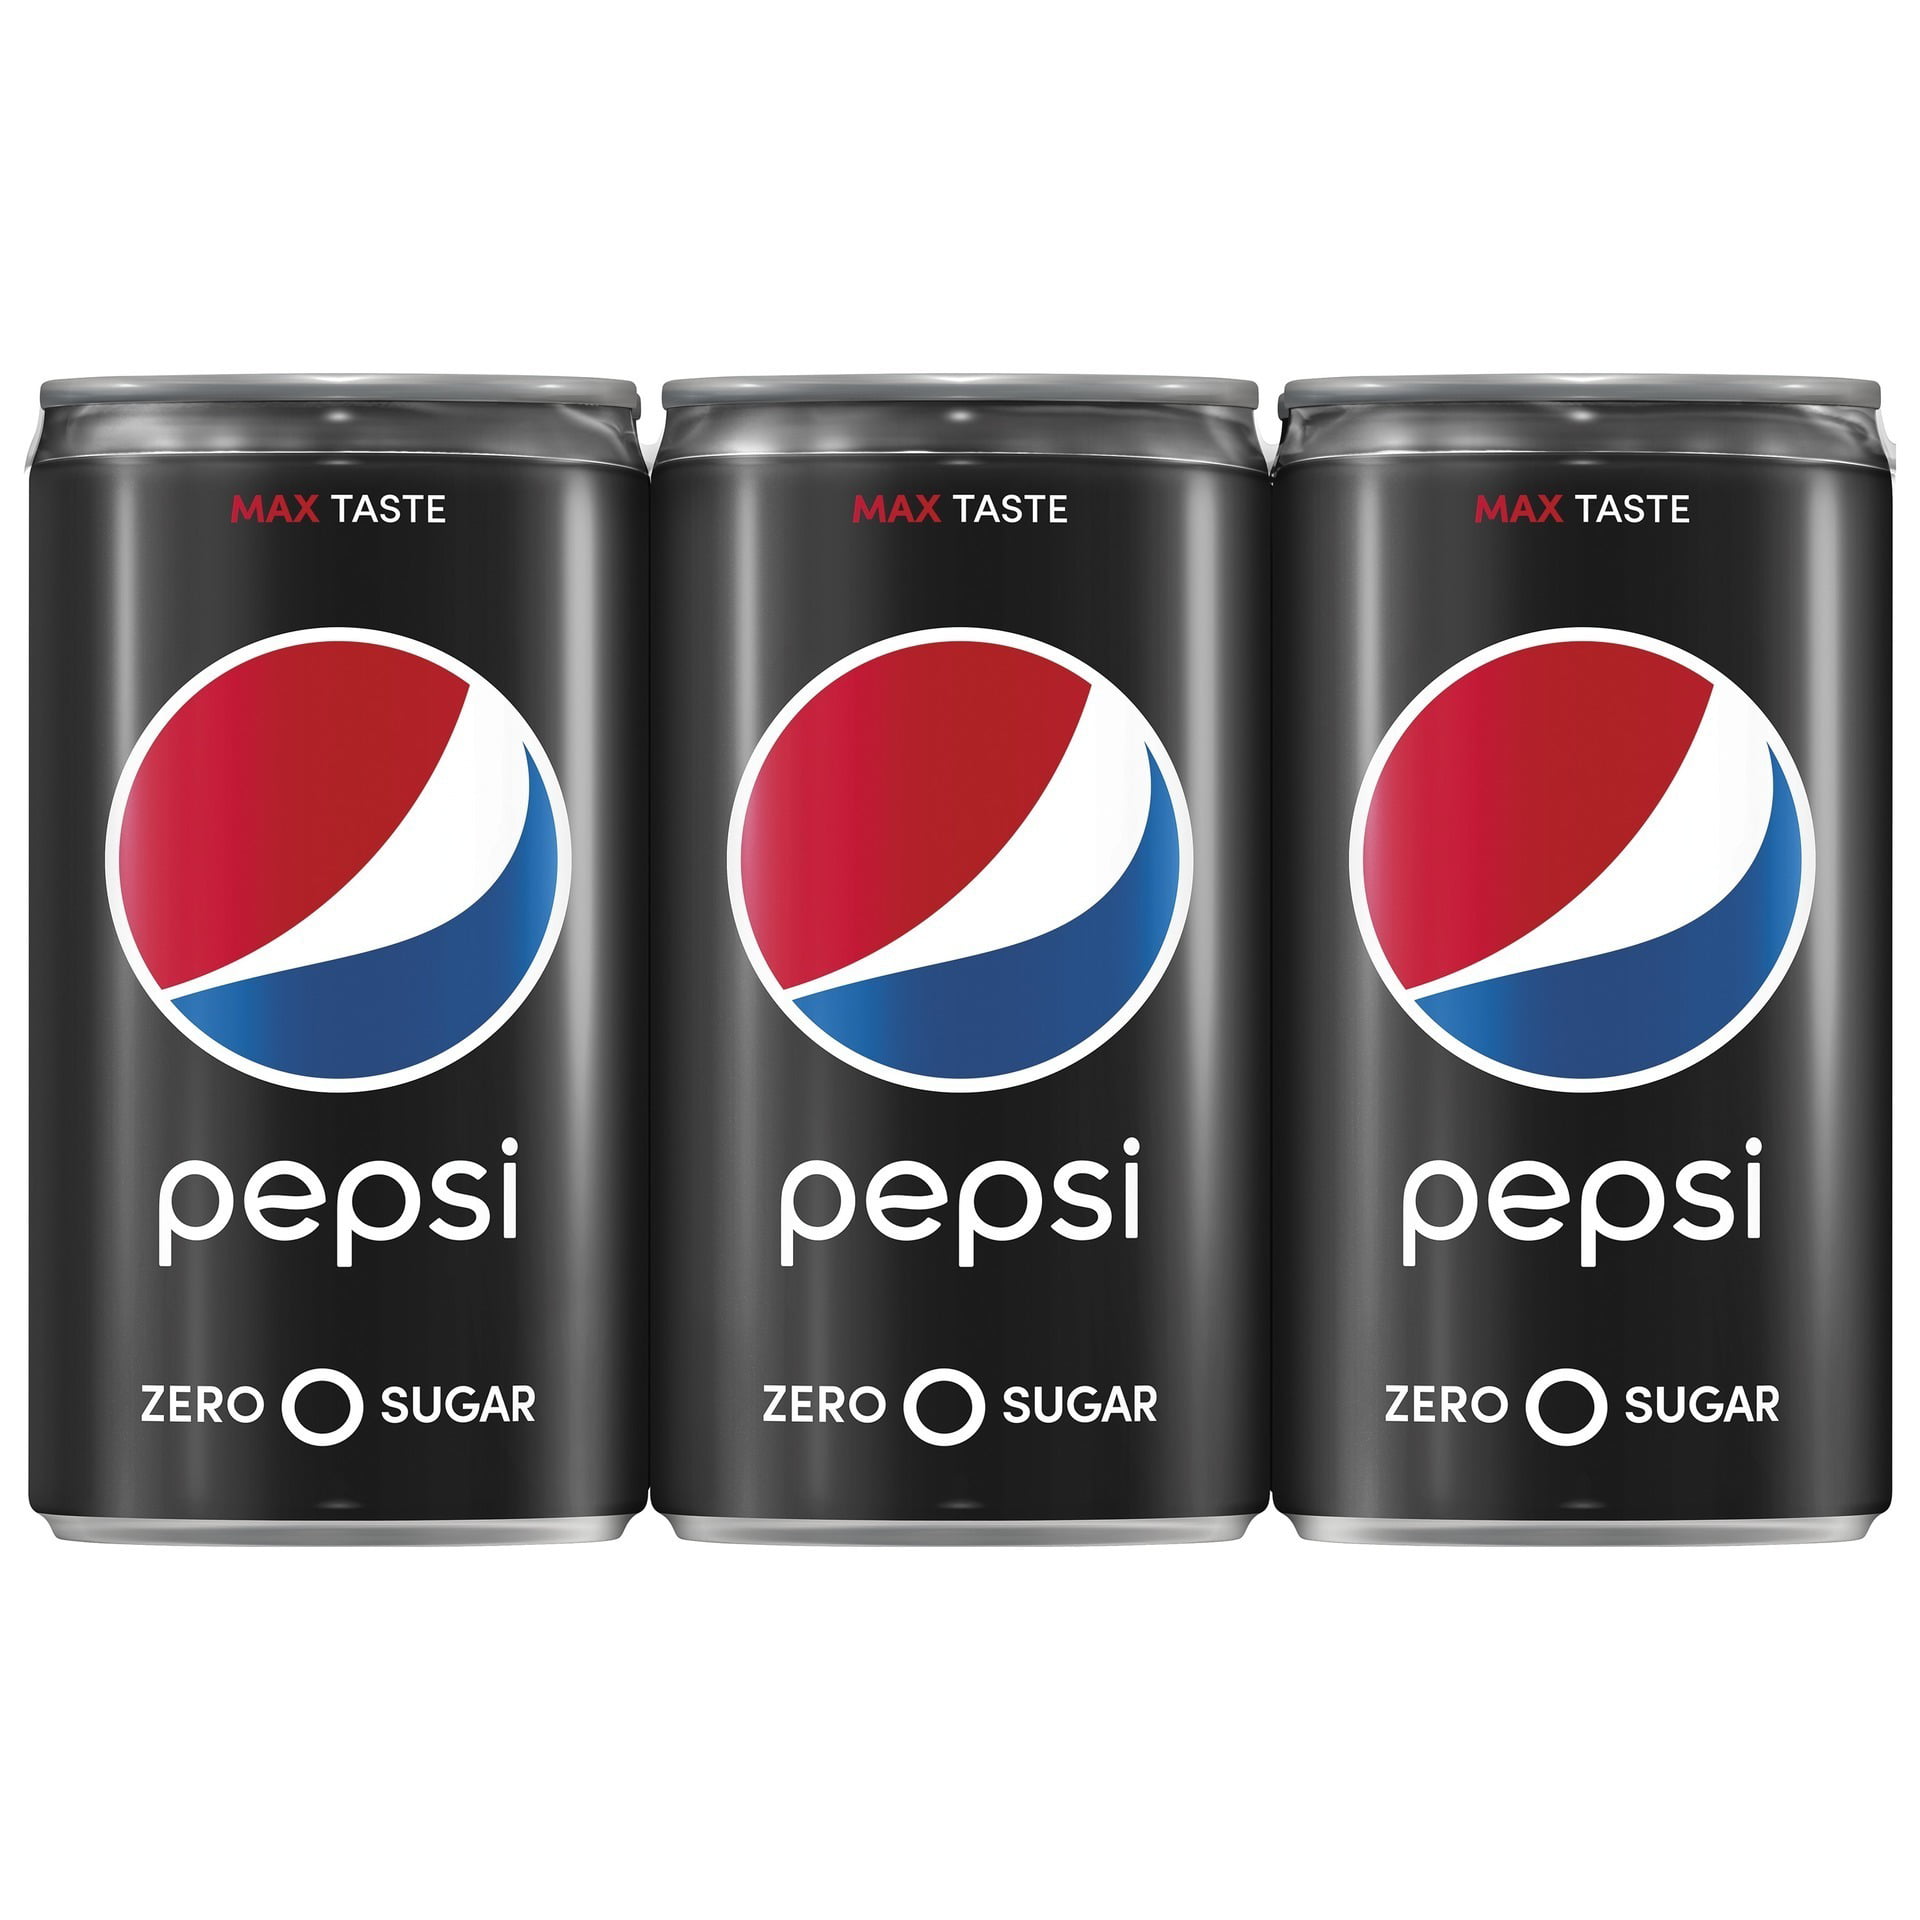 Pepsi Zero Sugar Soda, 7.5 oz Cans, 4 Count - Walmart.com - Walmart.com